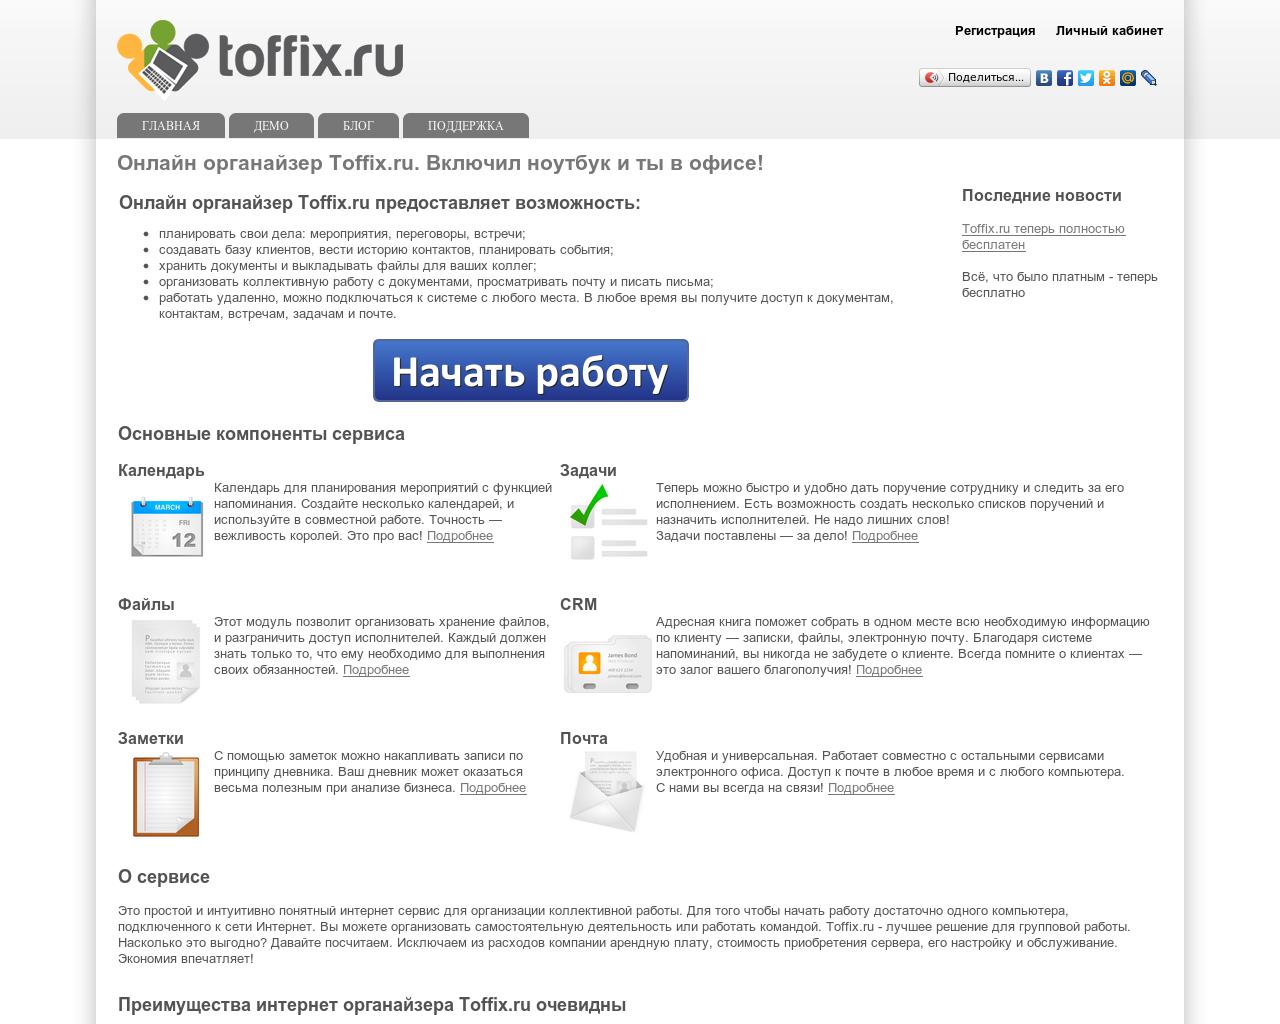 Изображение сайта toffix.ru в разрешении 1280x1024